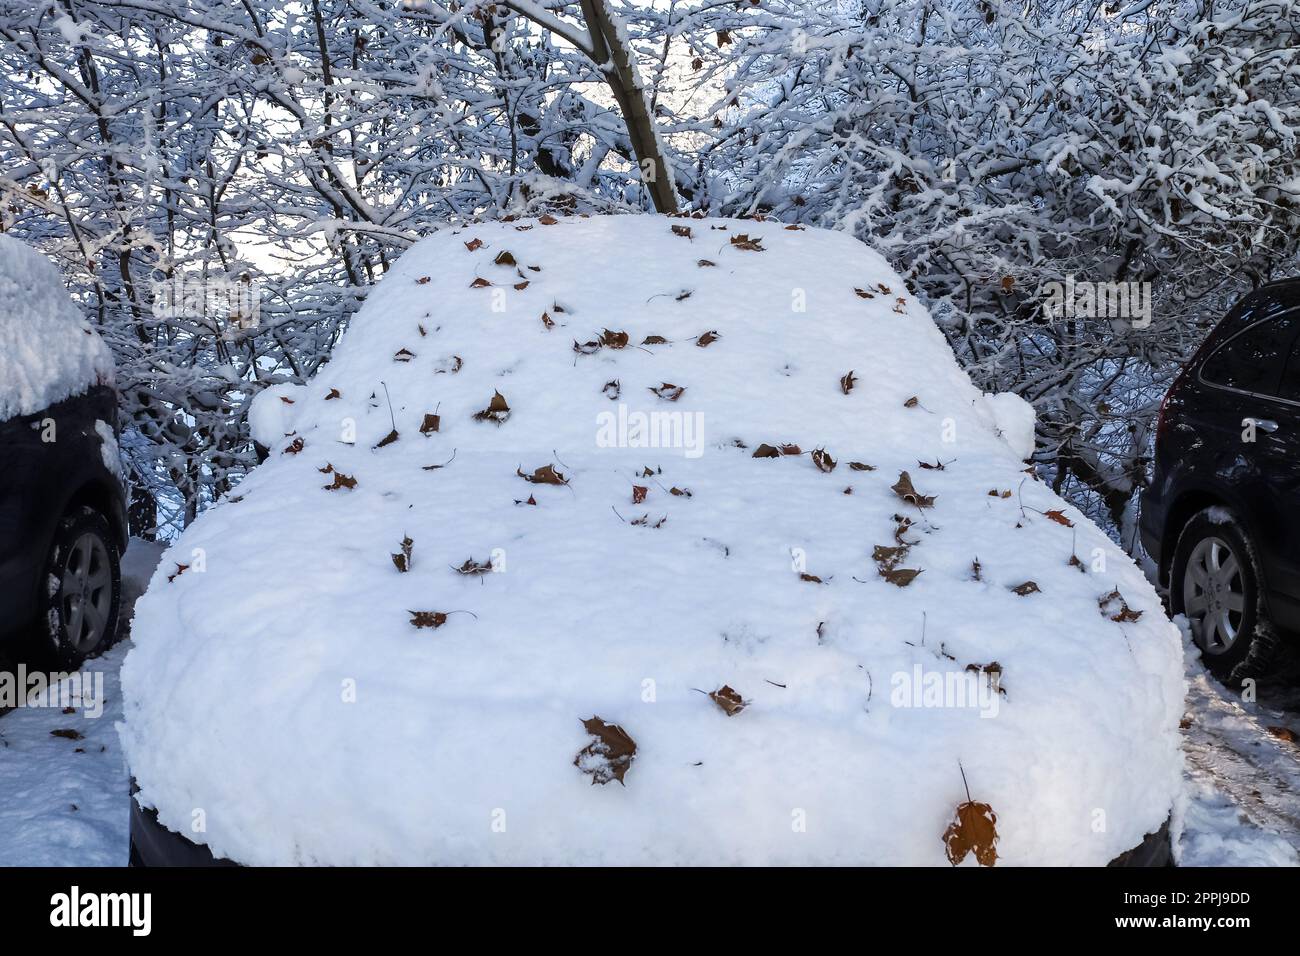 Ein Auto, das nach einem Schneesturm komplett mit dickem Schnee